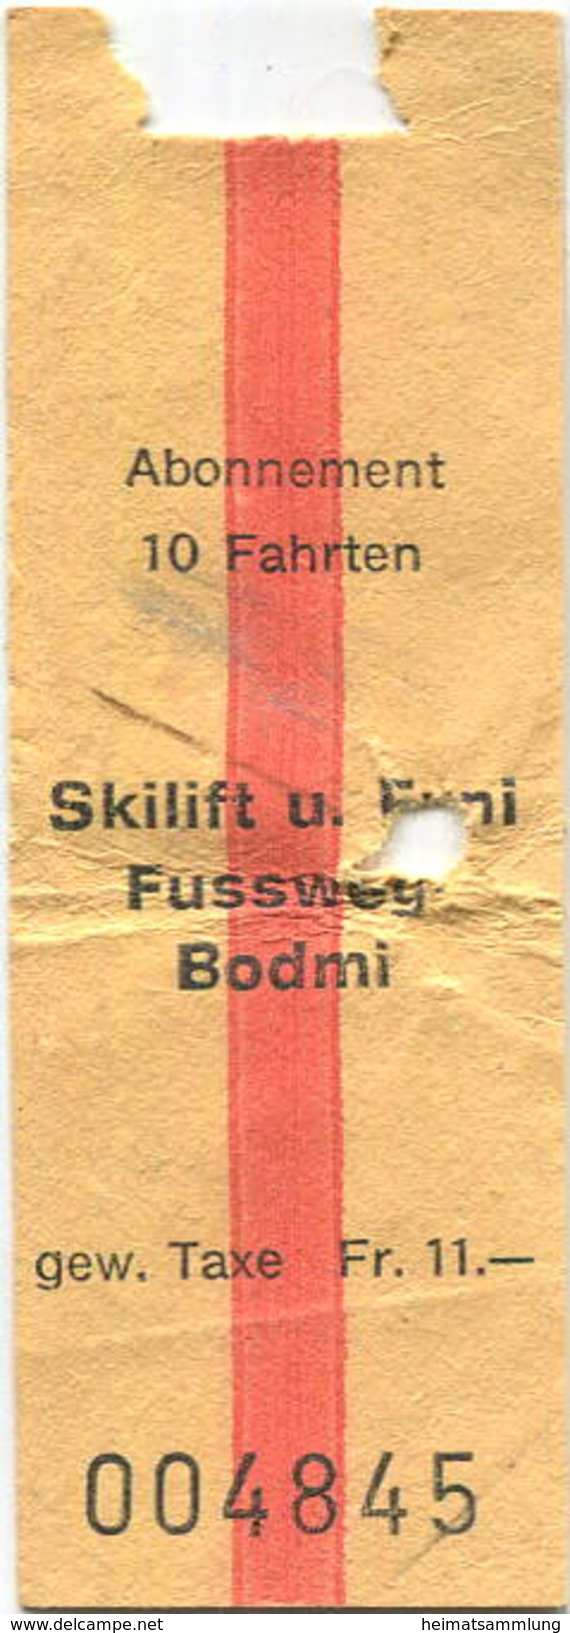 Schweiz - Skilift Fussweg Bodmi - Europe